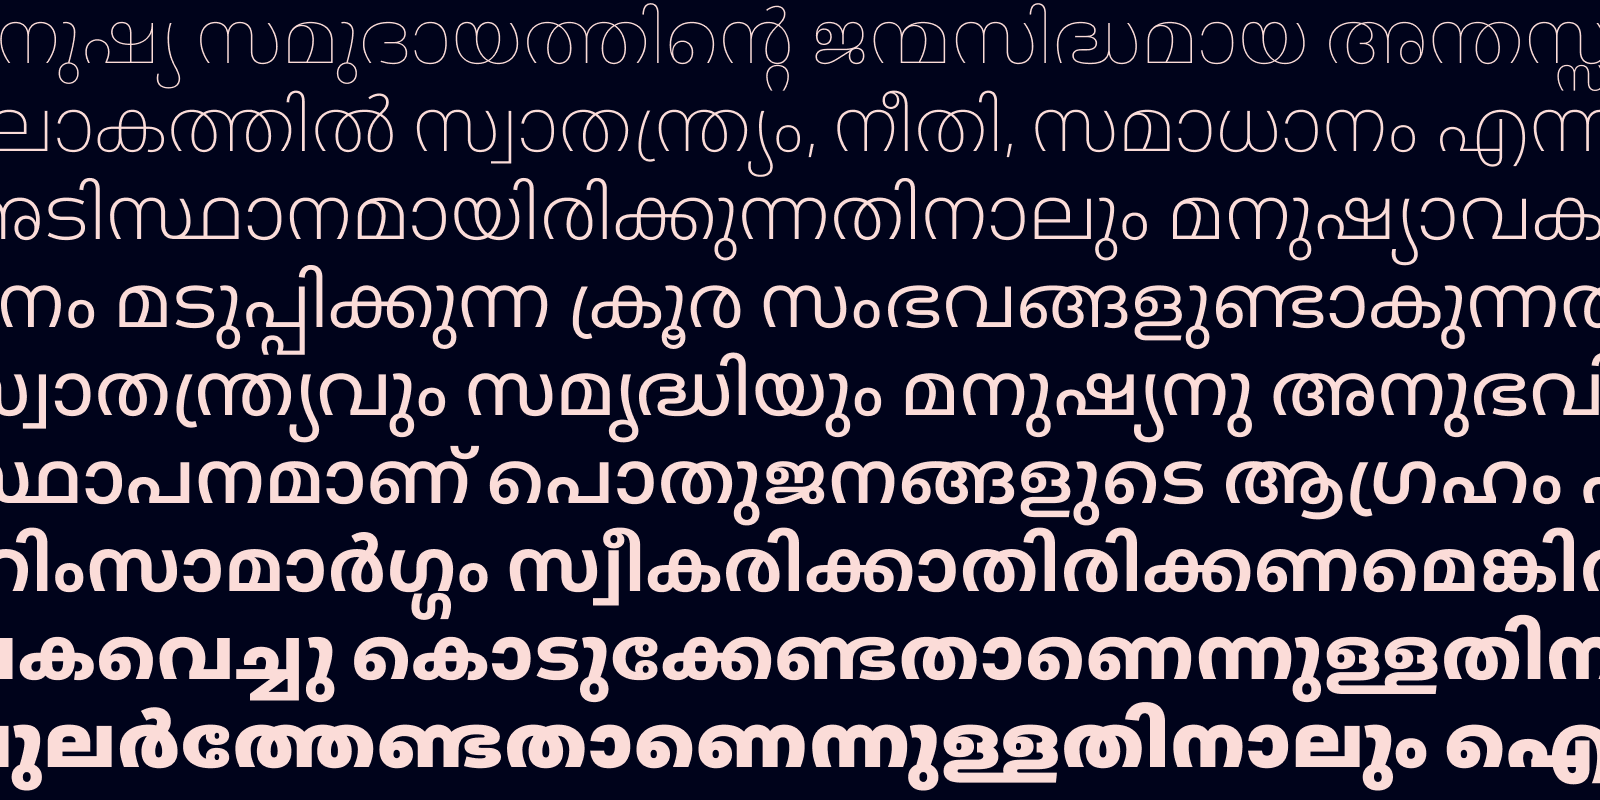 Card displaying Aktiv Grotesk Malayalam typeface in various styles